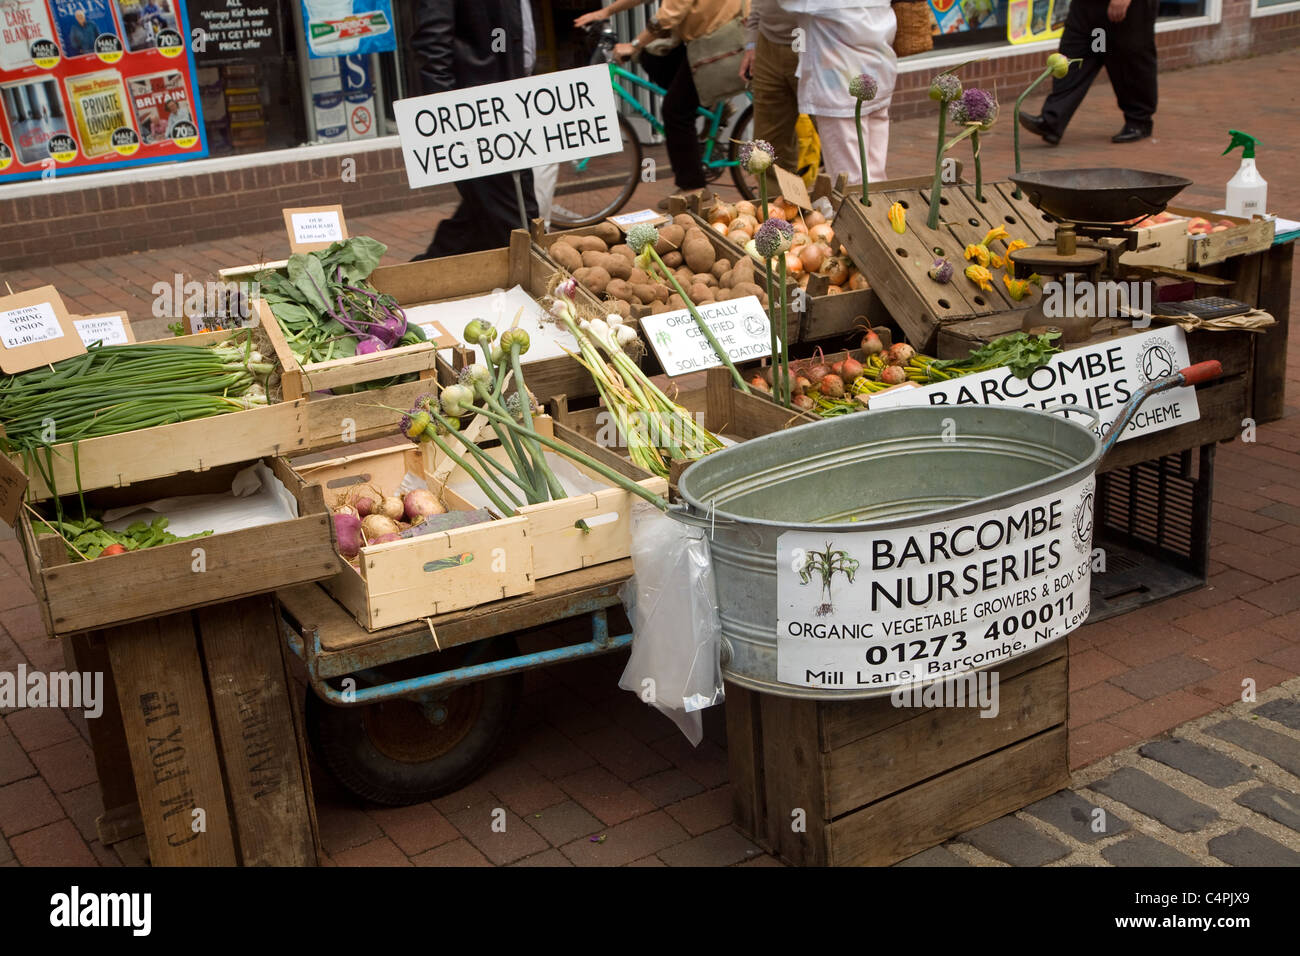 Barcombe kiosque de légumes biologiques pépinières de Lewes, East Sussex, Angleterre Banque D'Images